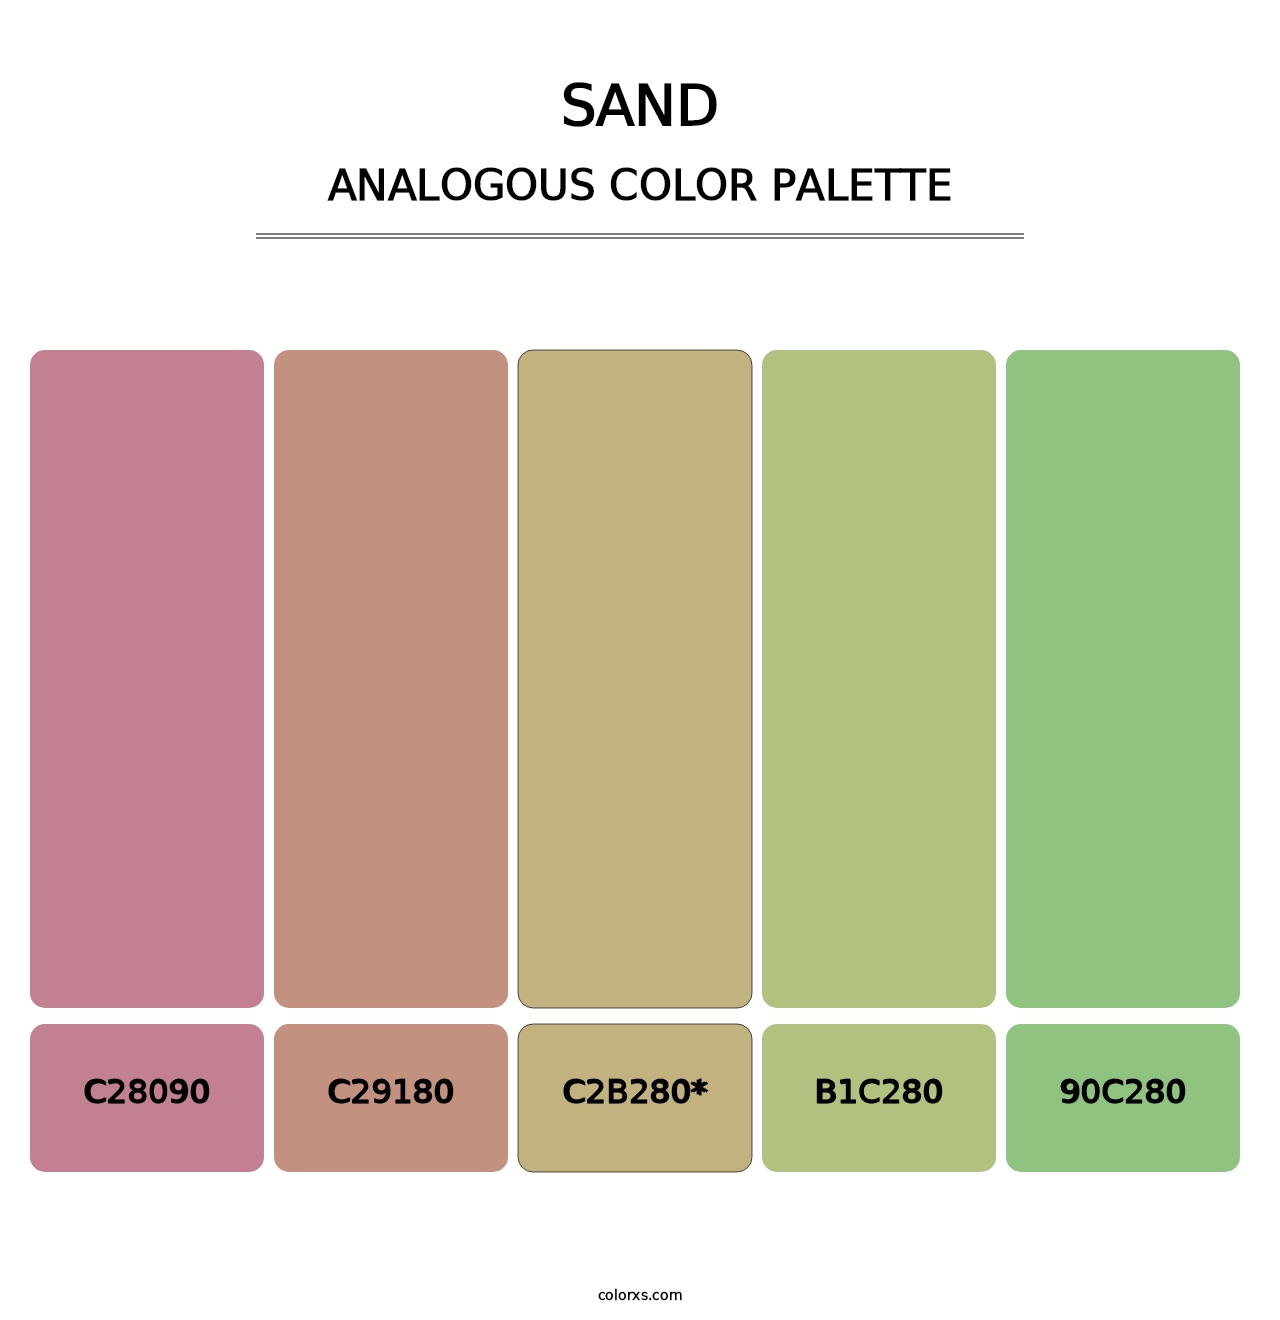 Sand - Analogous Color Palette